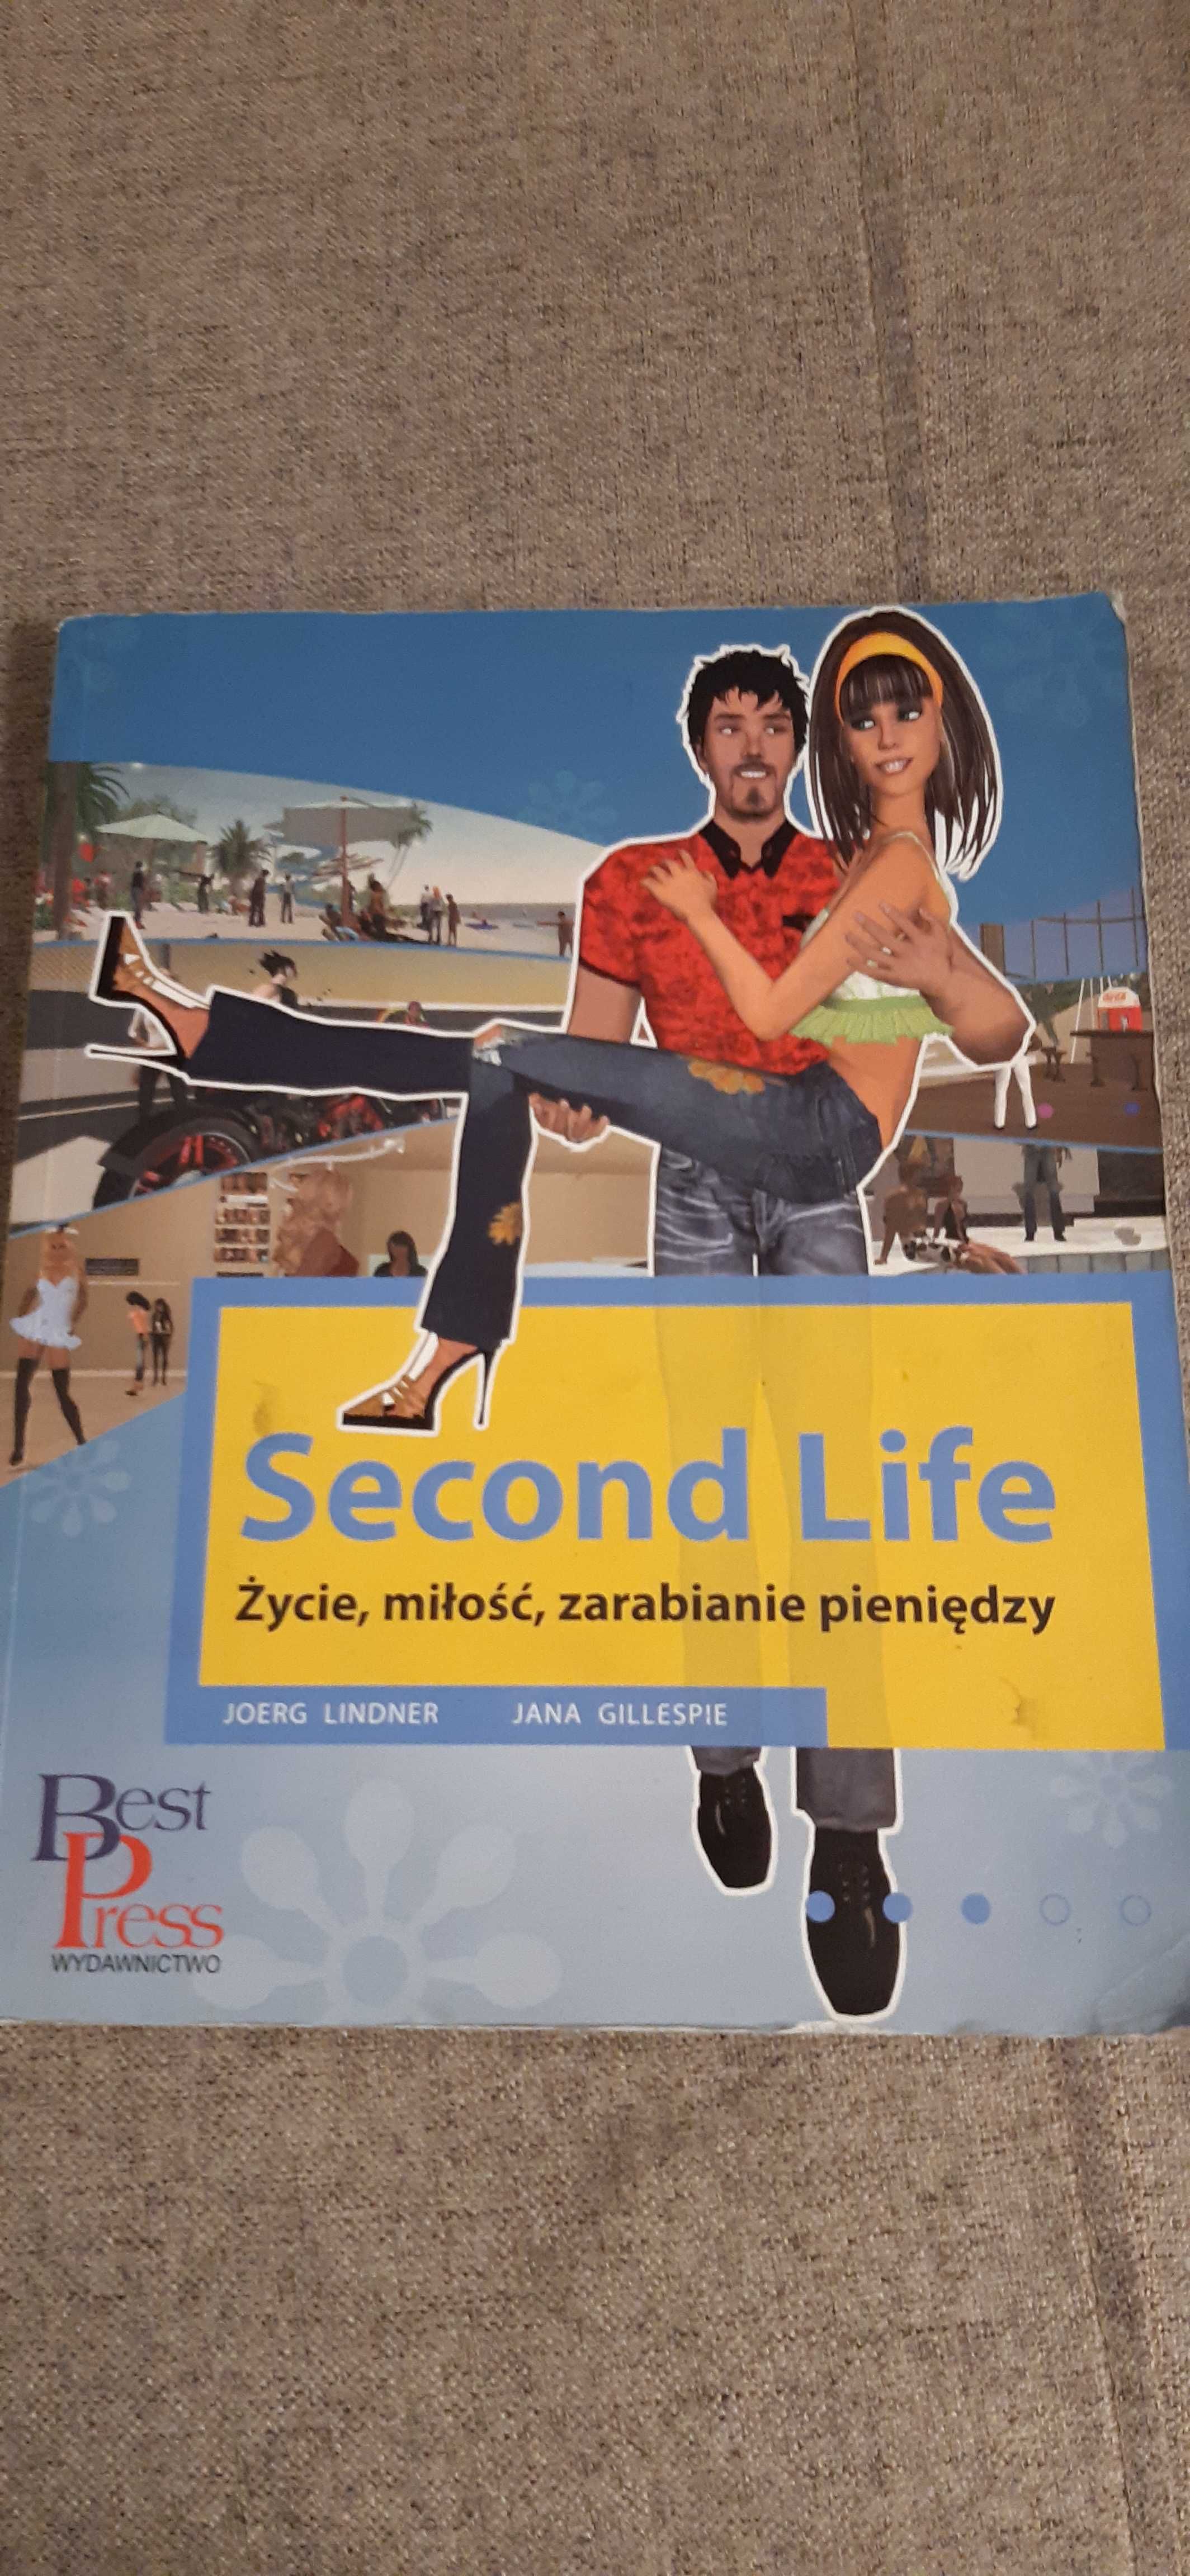 second life podręcznik gracza dla kolekcjonerów gier pc